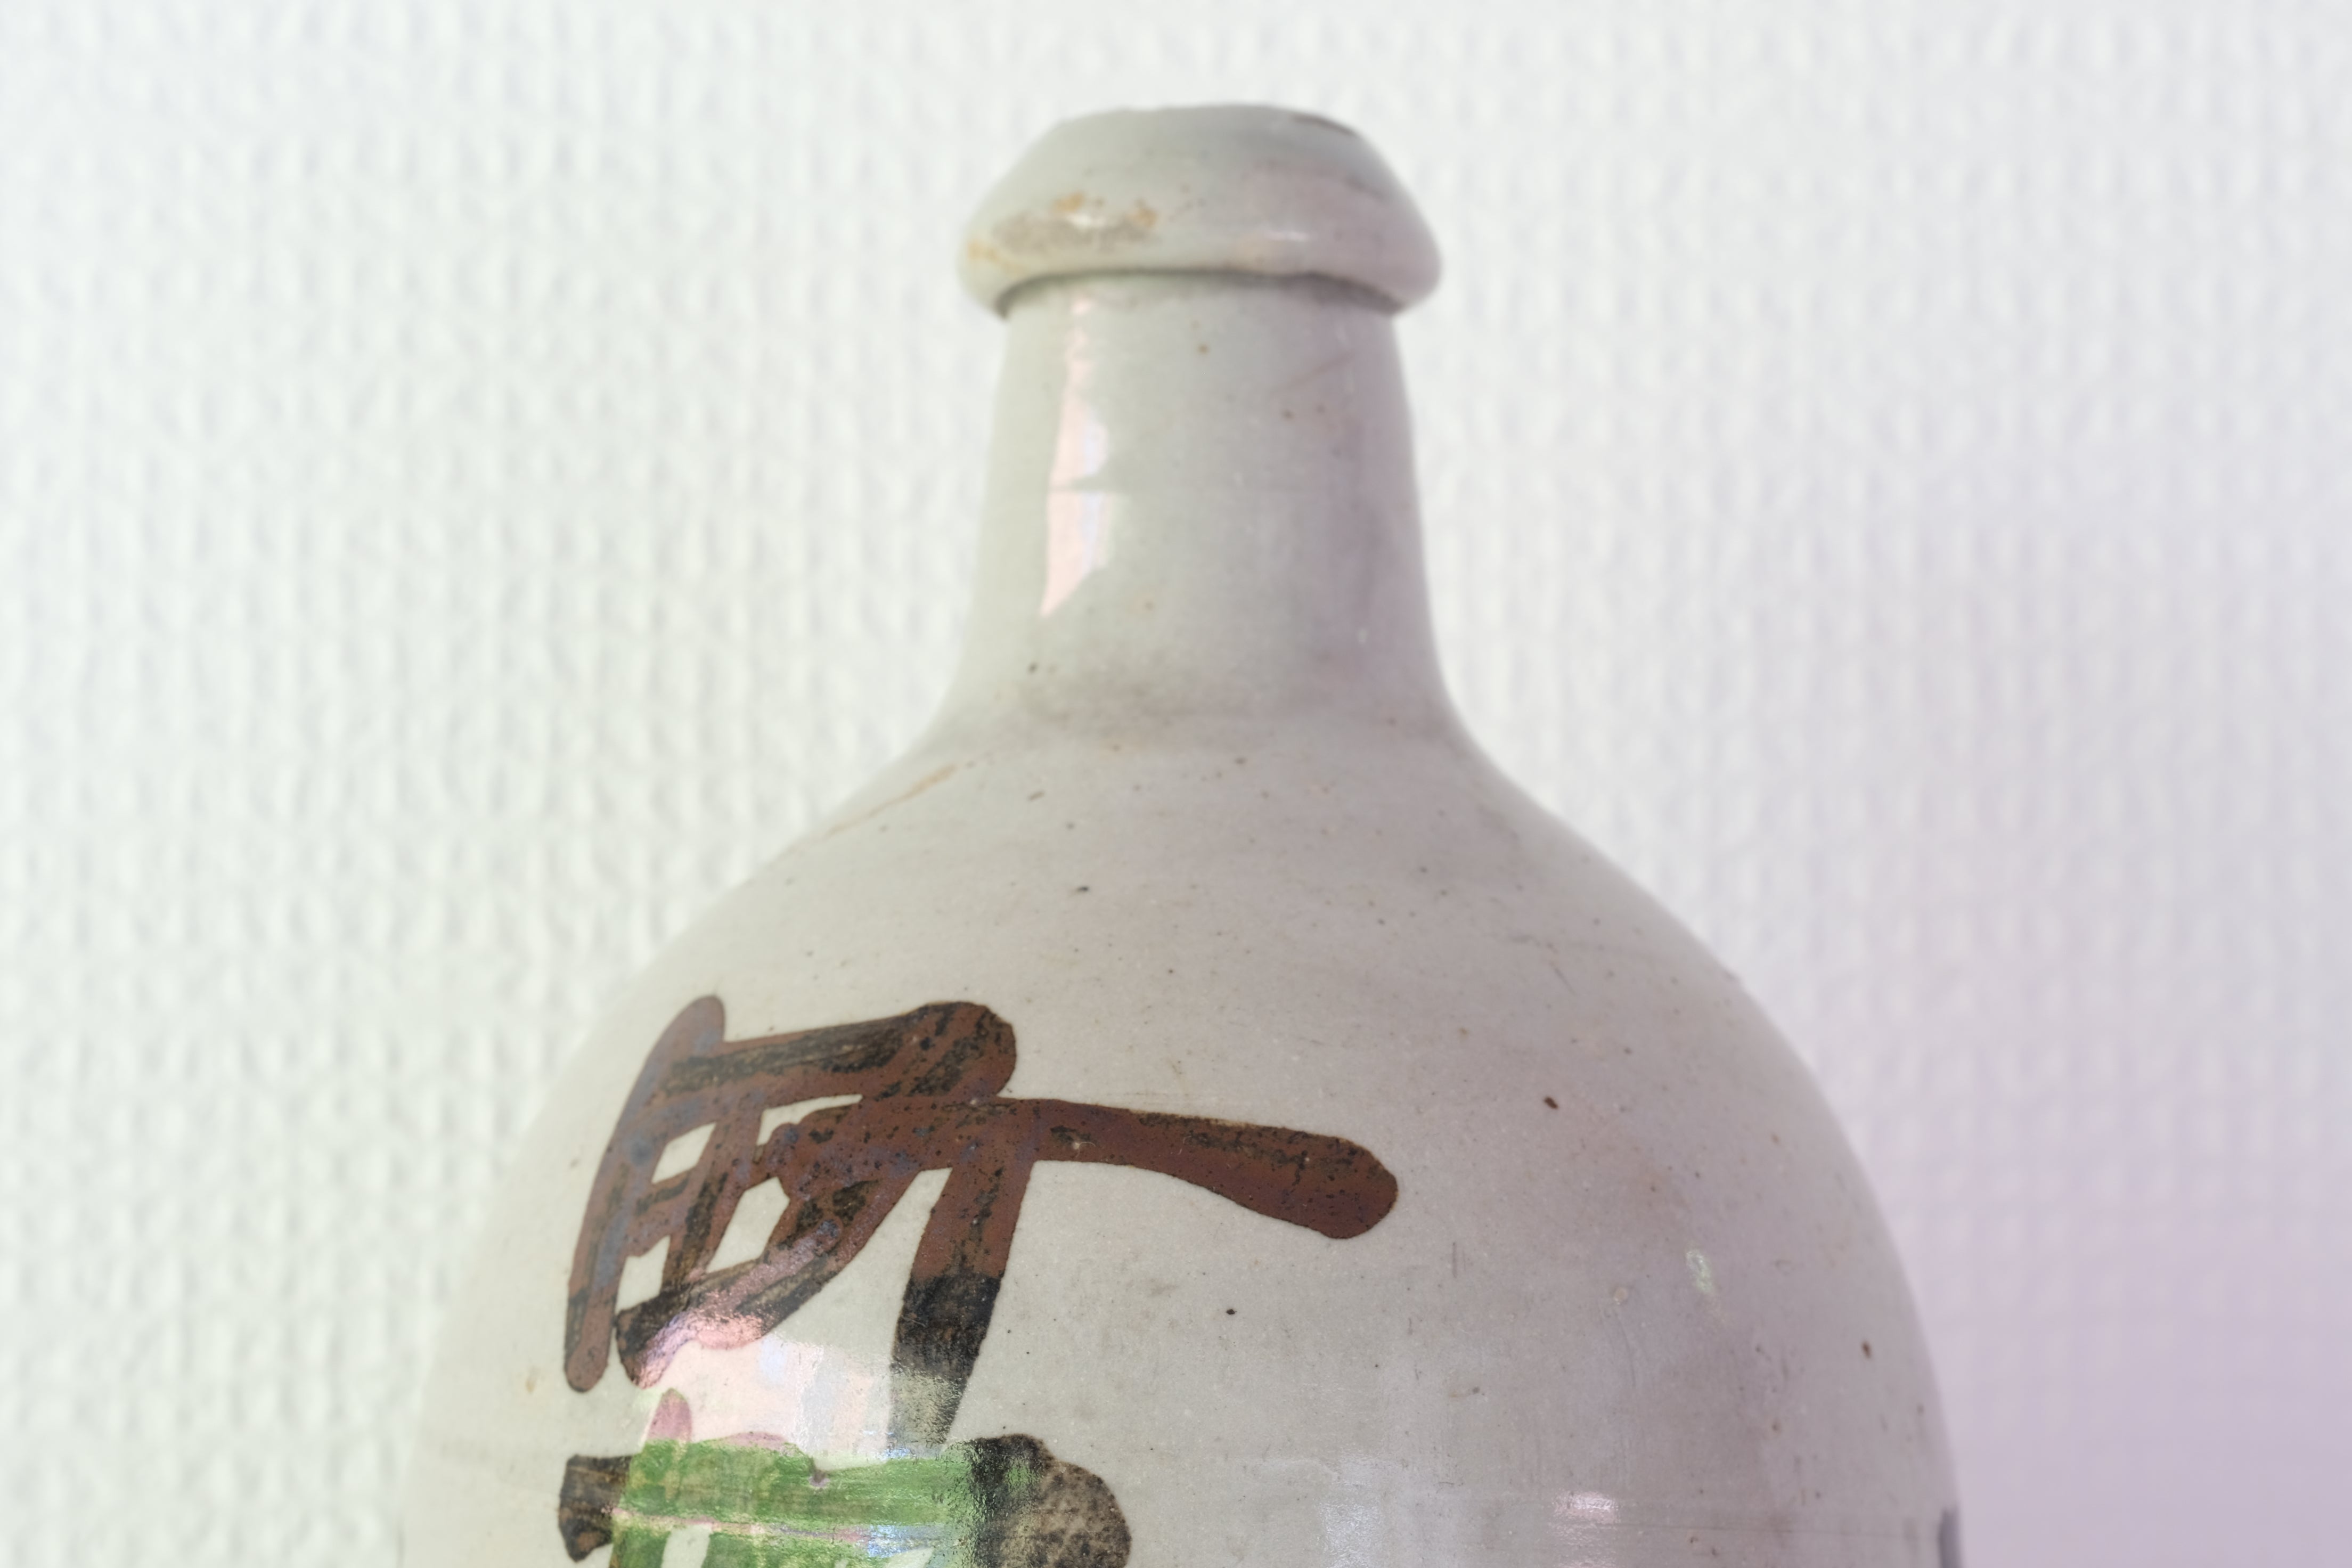 Antique Japanese Ceramic Sake Bottle | 27 cm